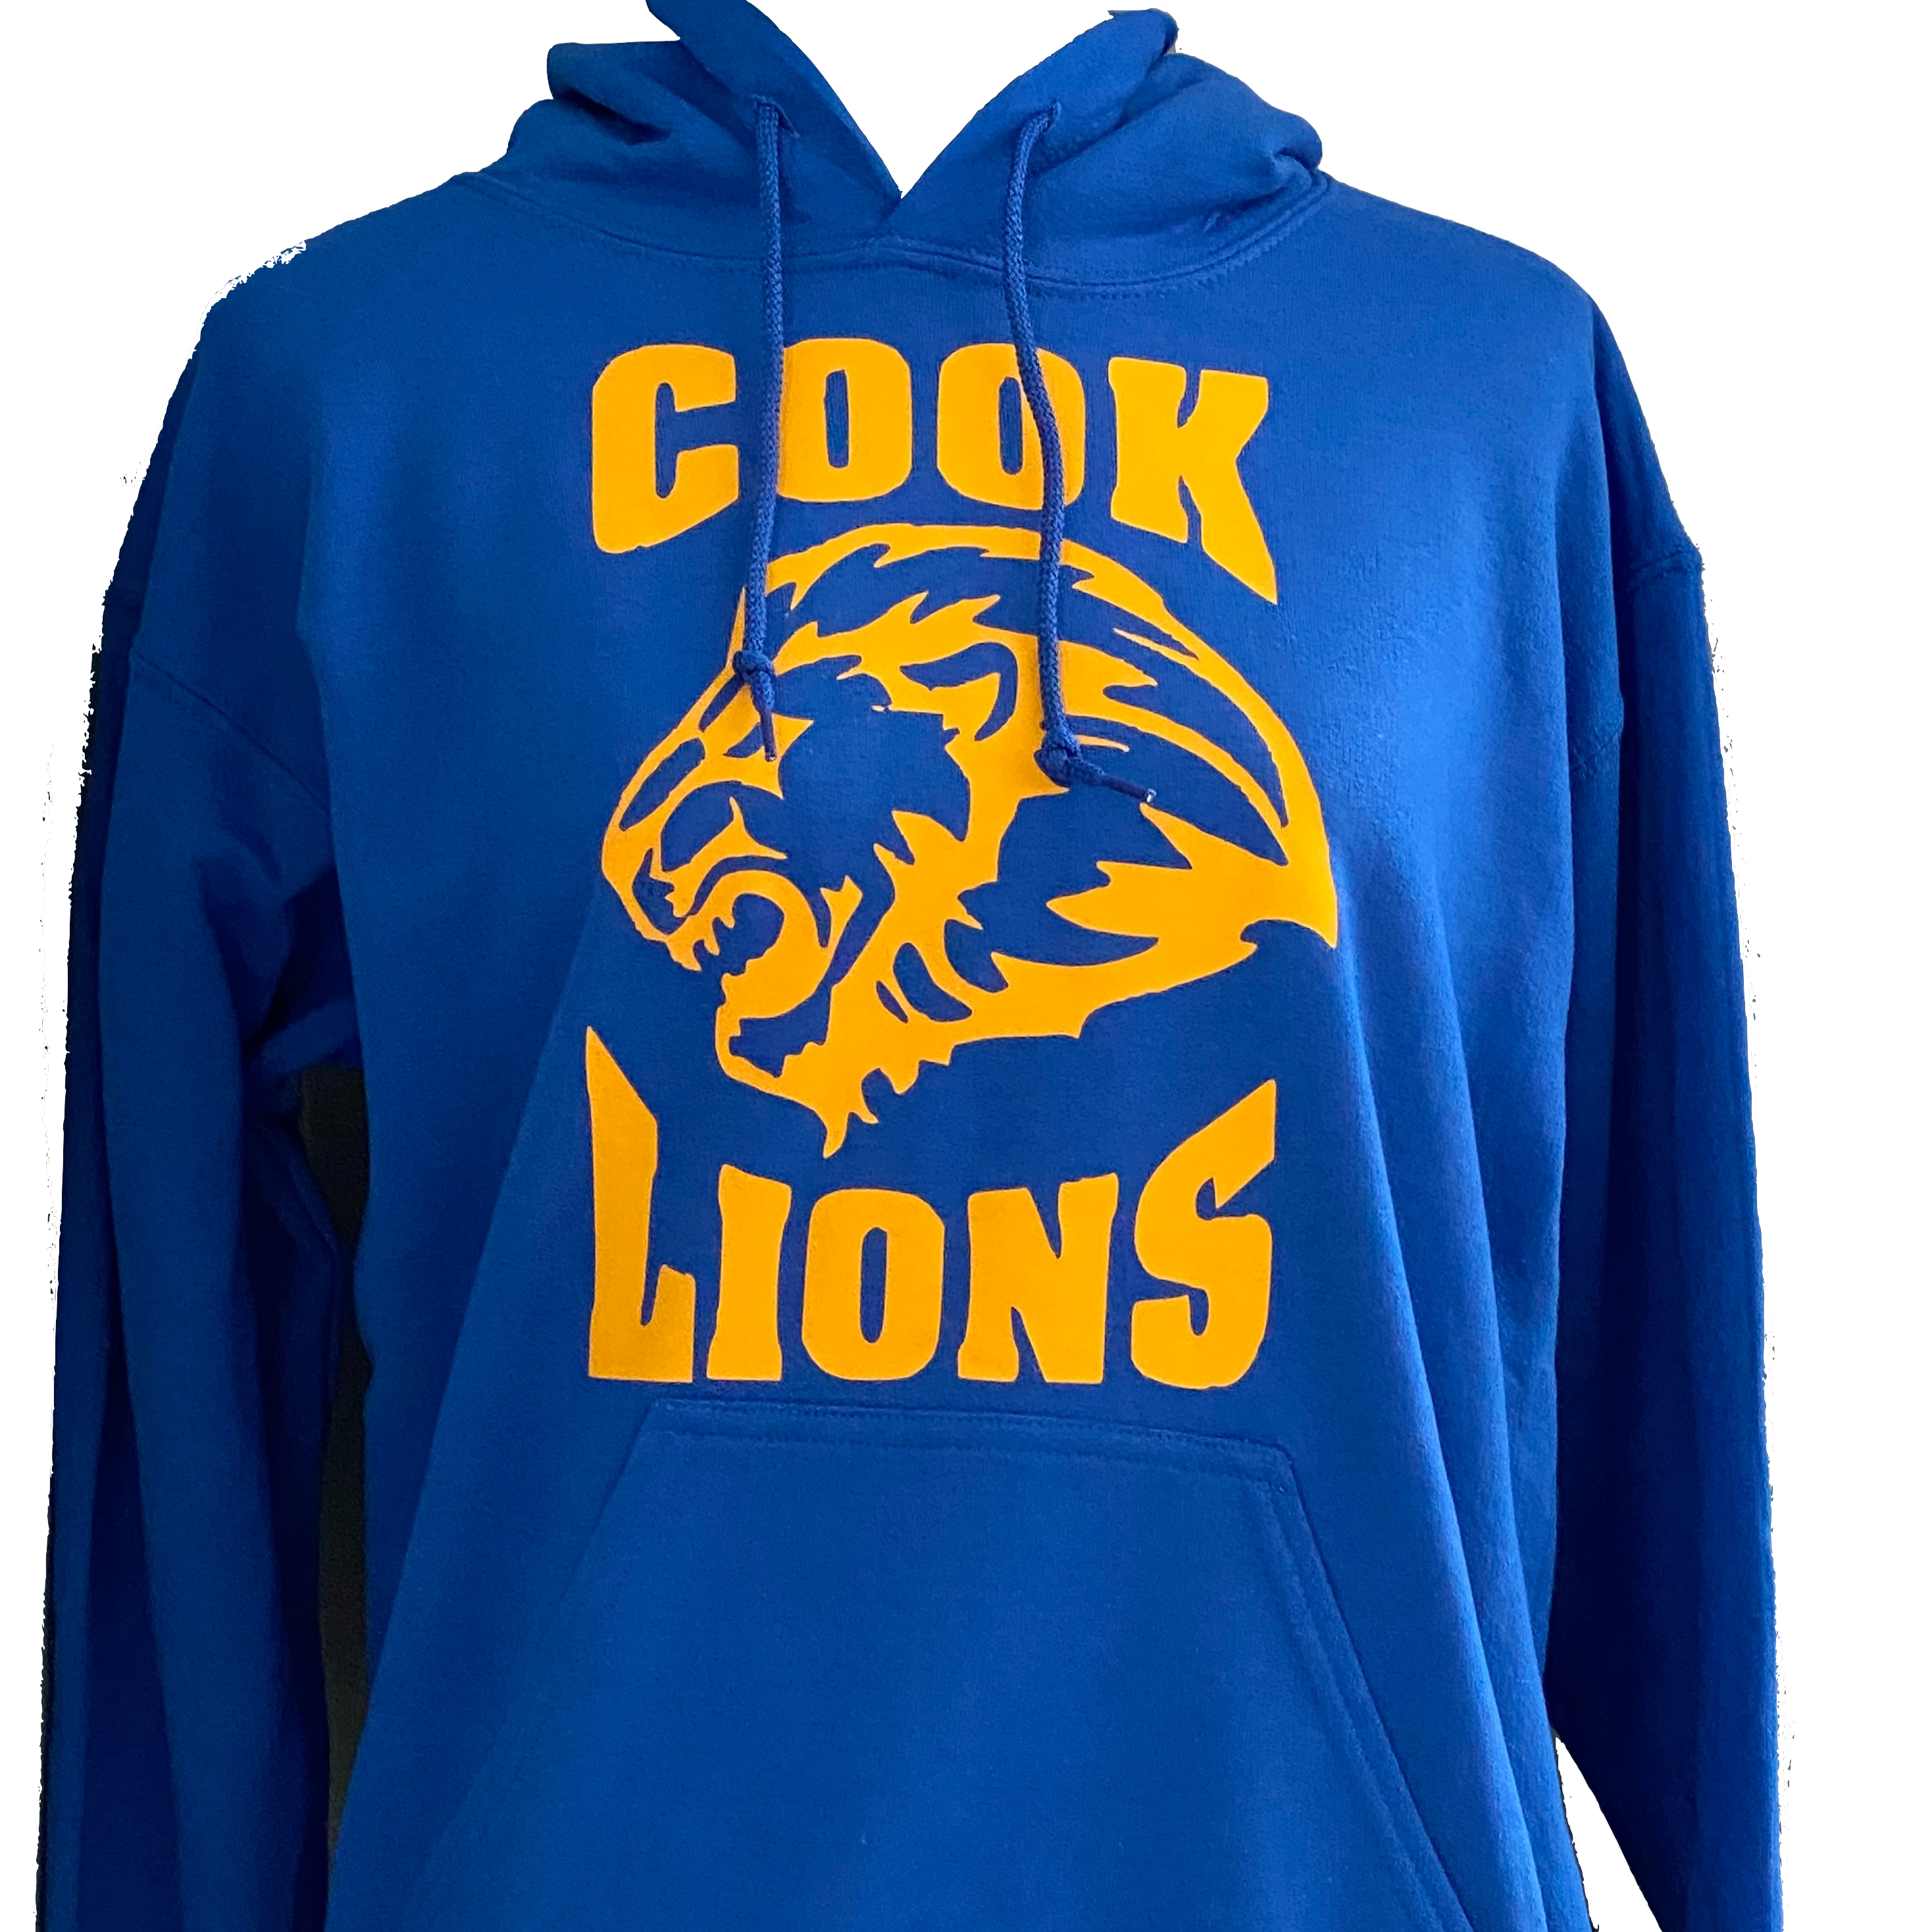 Cook Lions Royal Blue Adult Hoodie